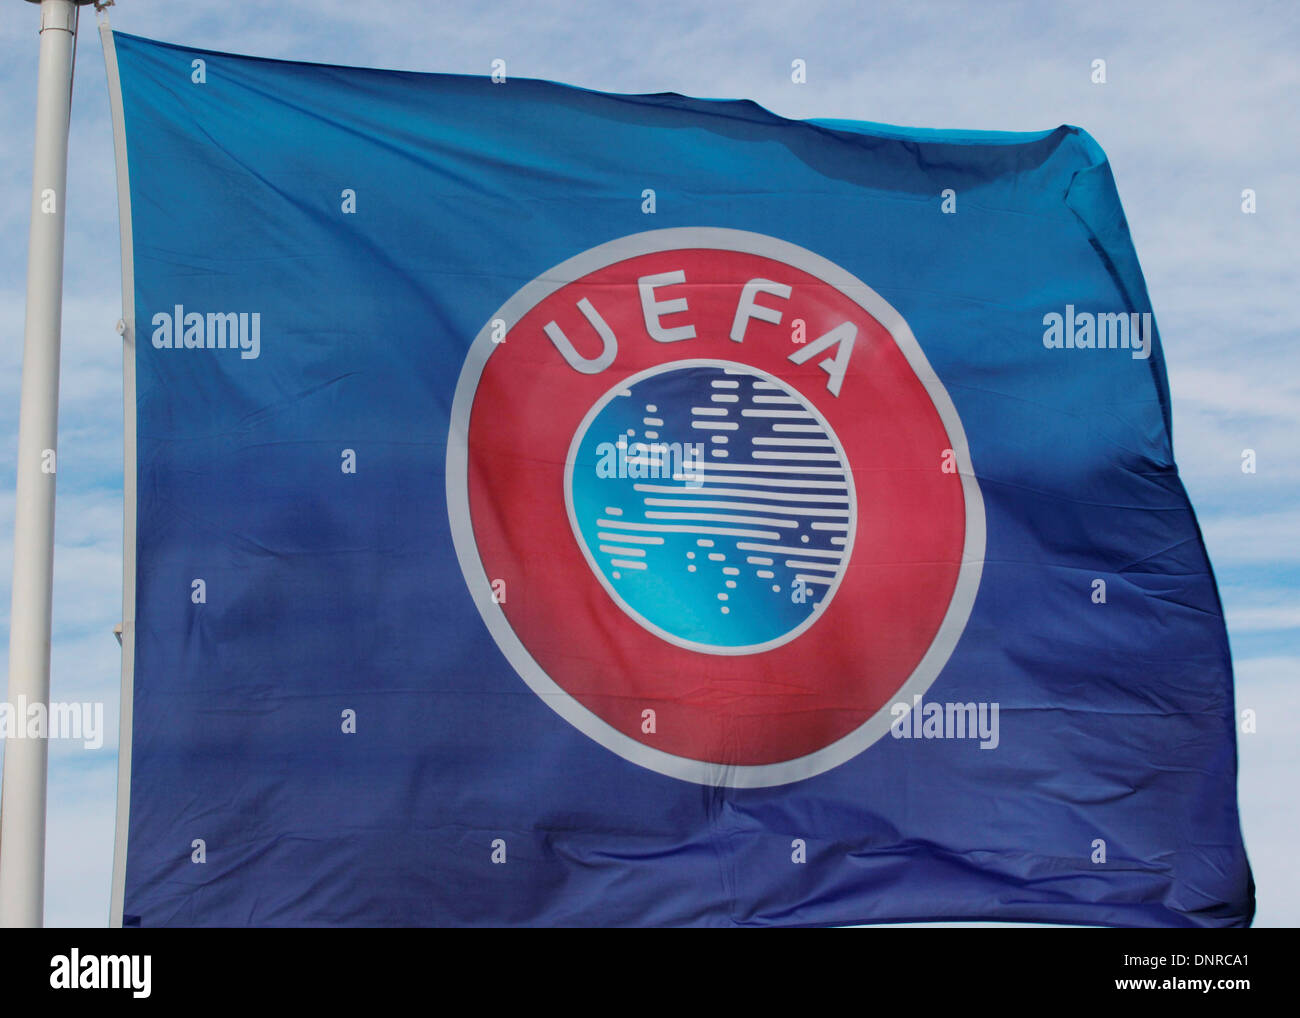 UEFA Flag and emblem Stock Photo